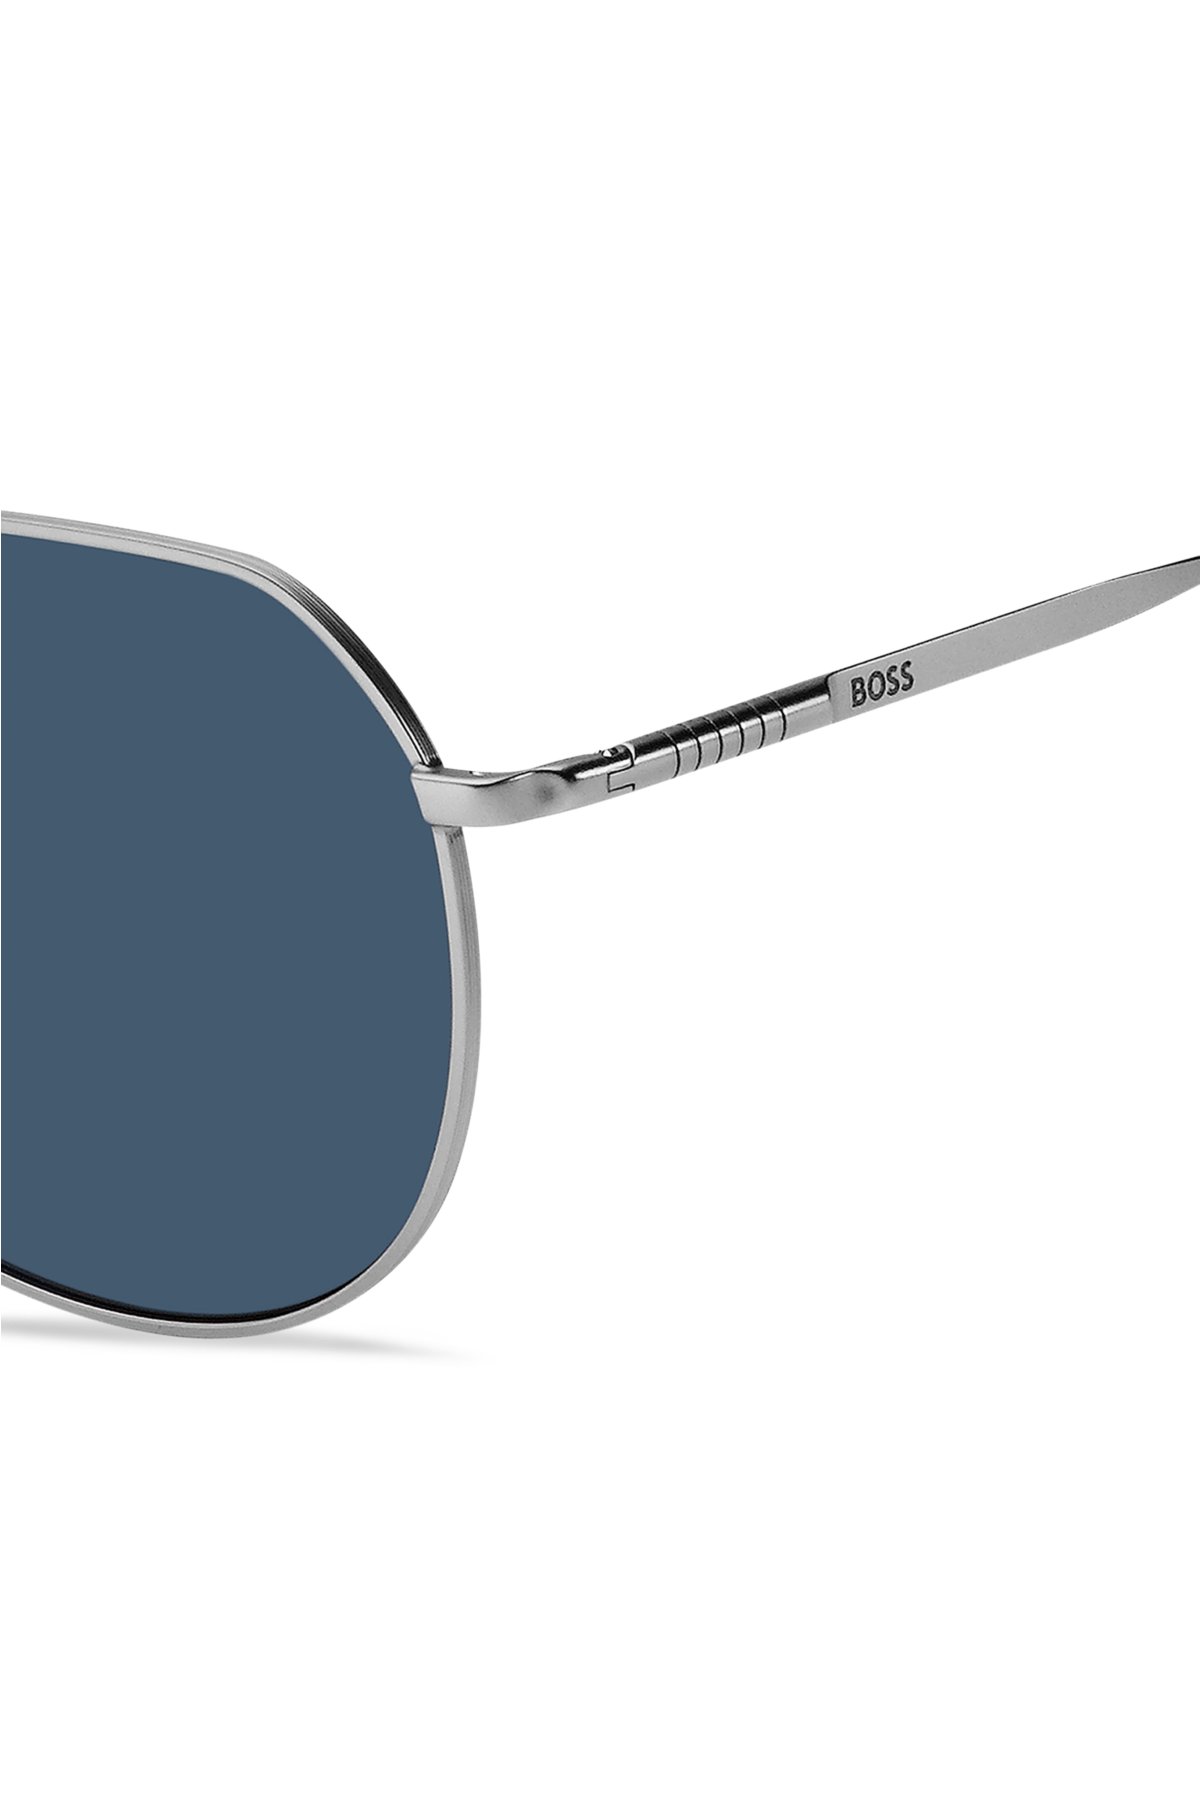 Double-bridge sunglasses with beta-titanium temples